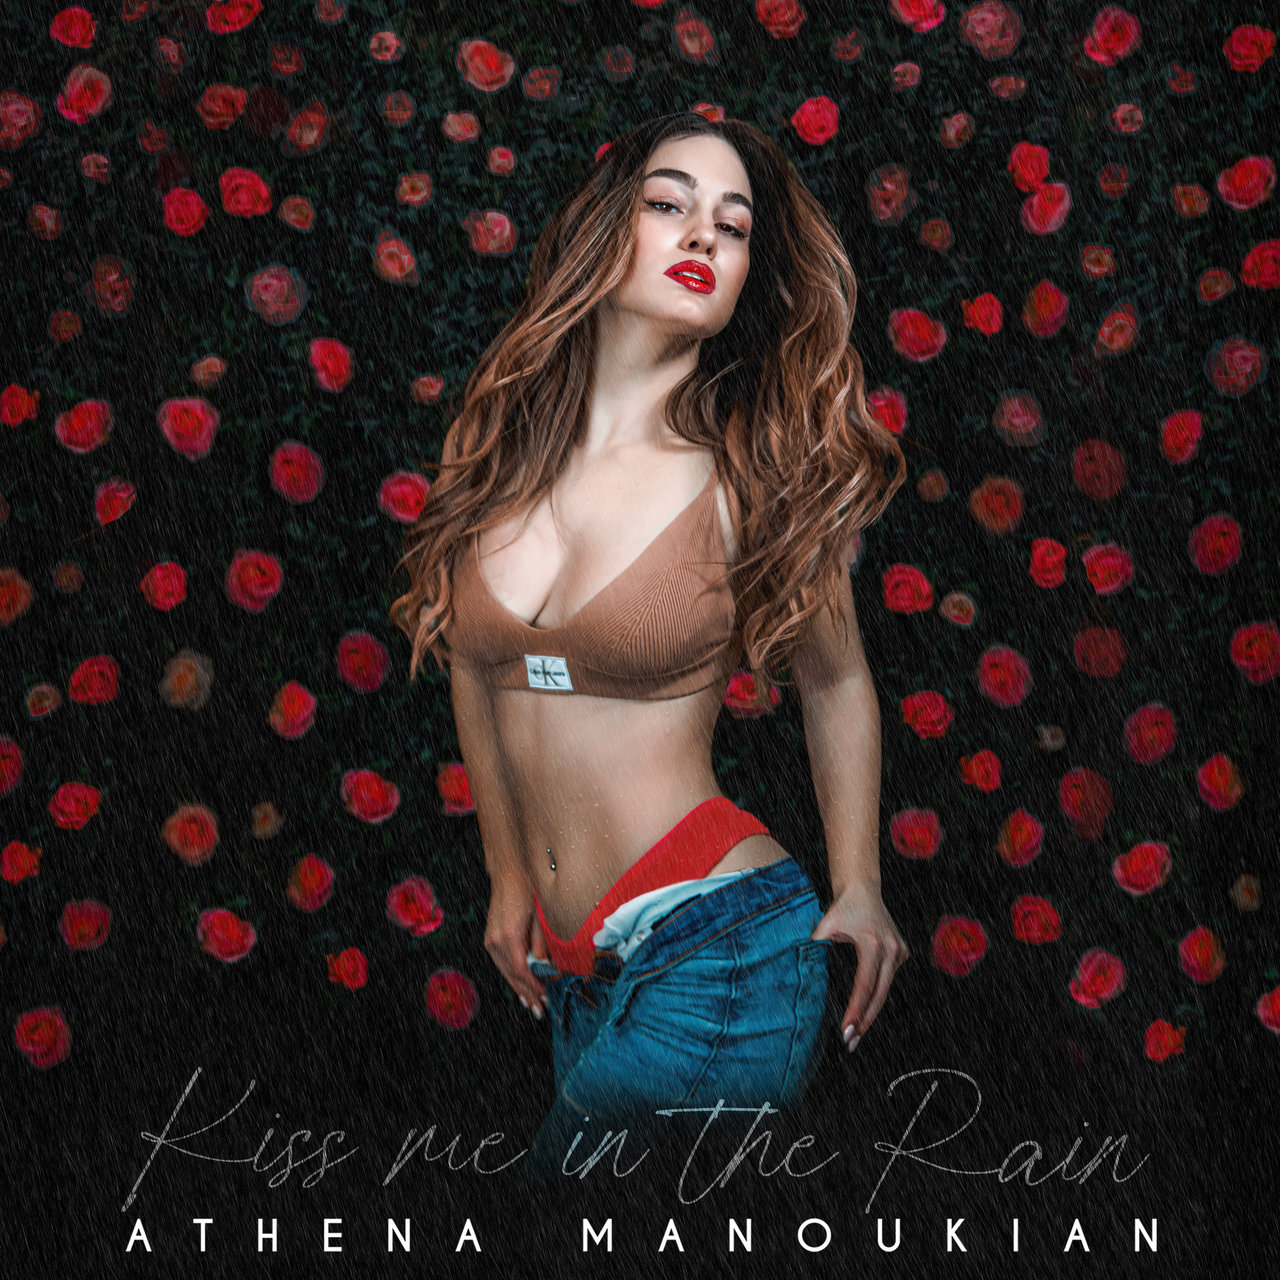 Athena Manoukian Kiss Me in the Rain cover artwork